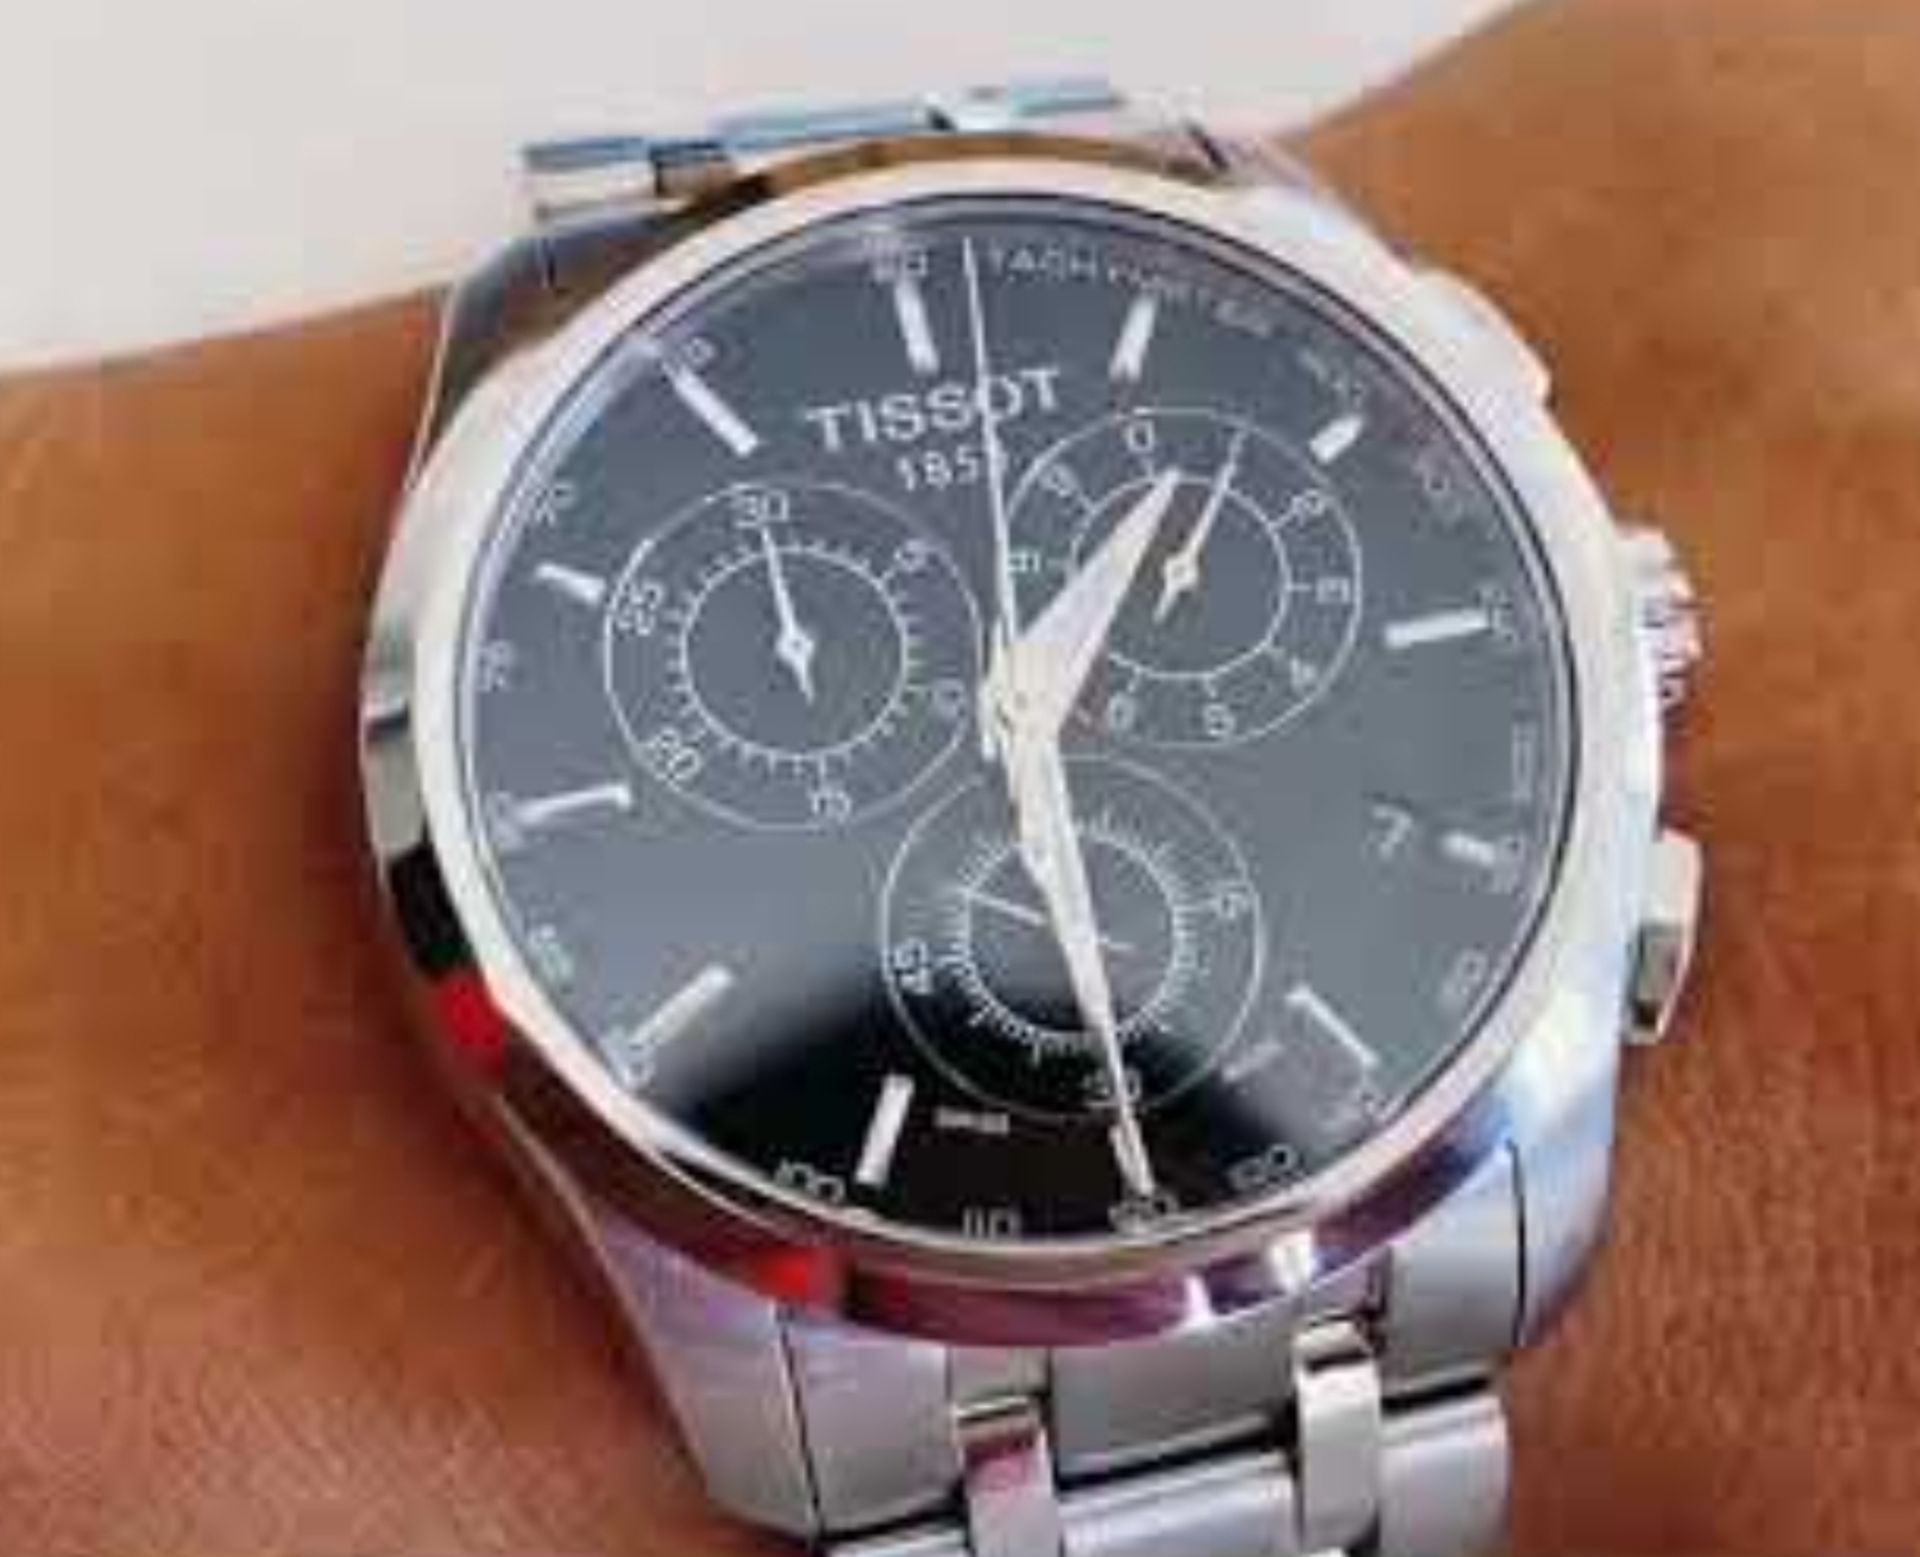 TISSOT T035.617.11.051.00 Men's Couturier Quartz Chronograph Watch - Image 6 of 10